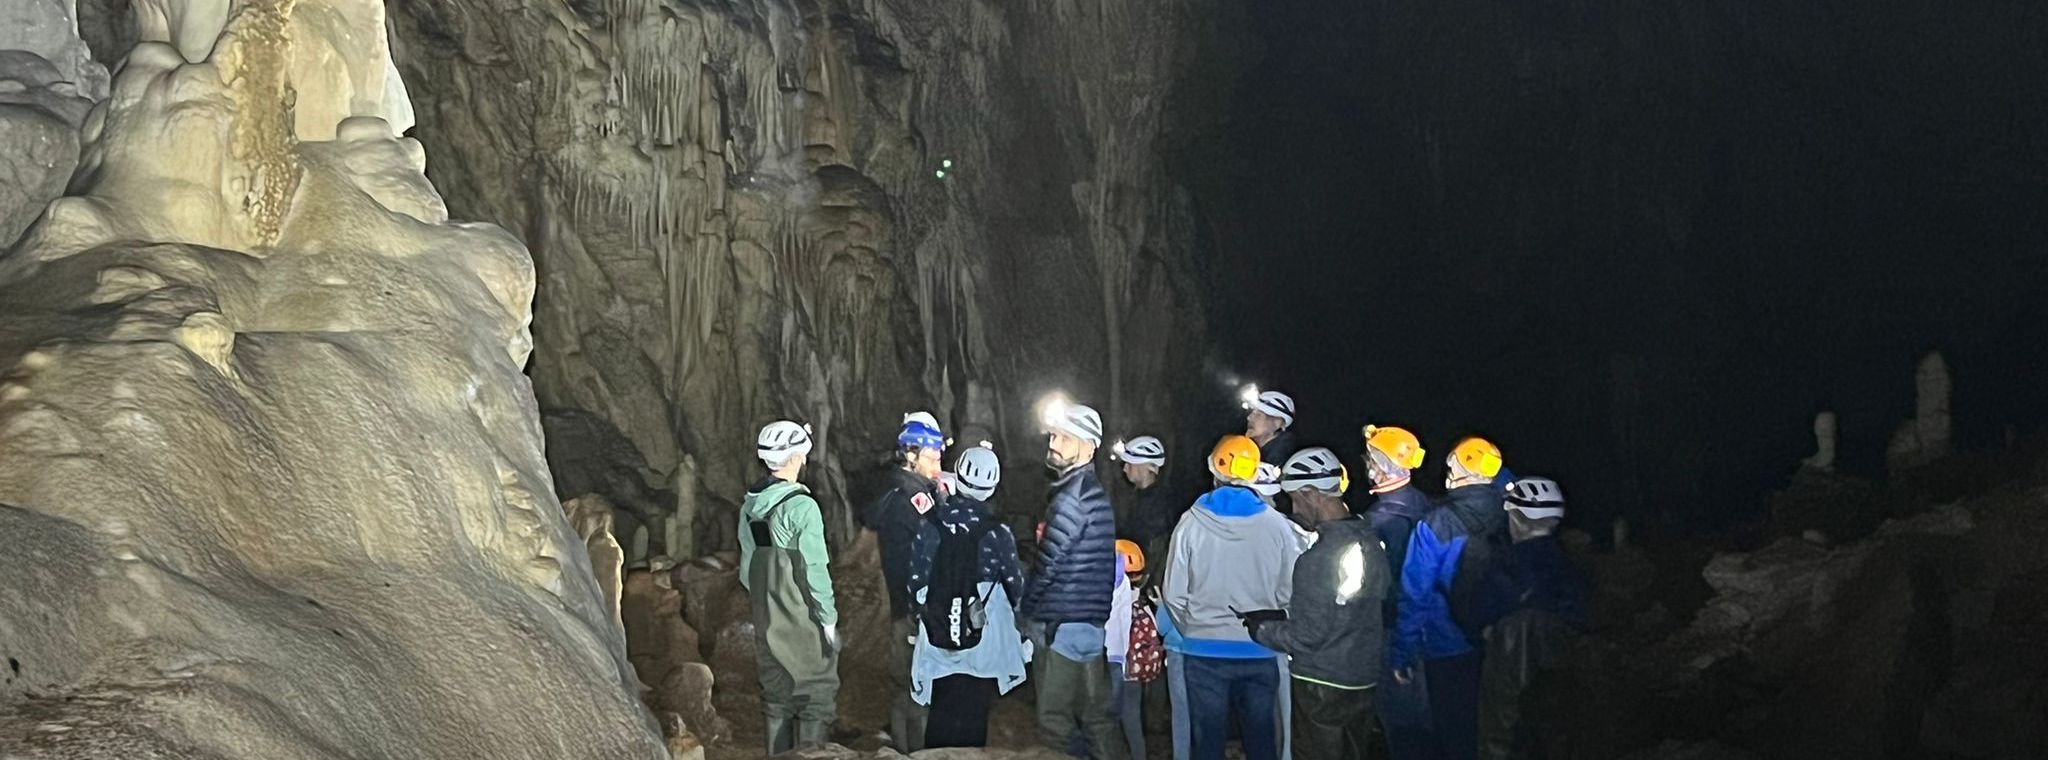 grotte visita interno - Copia